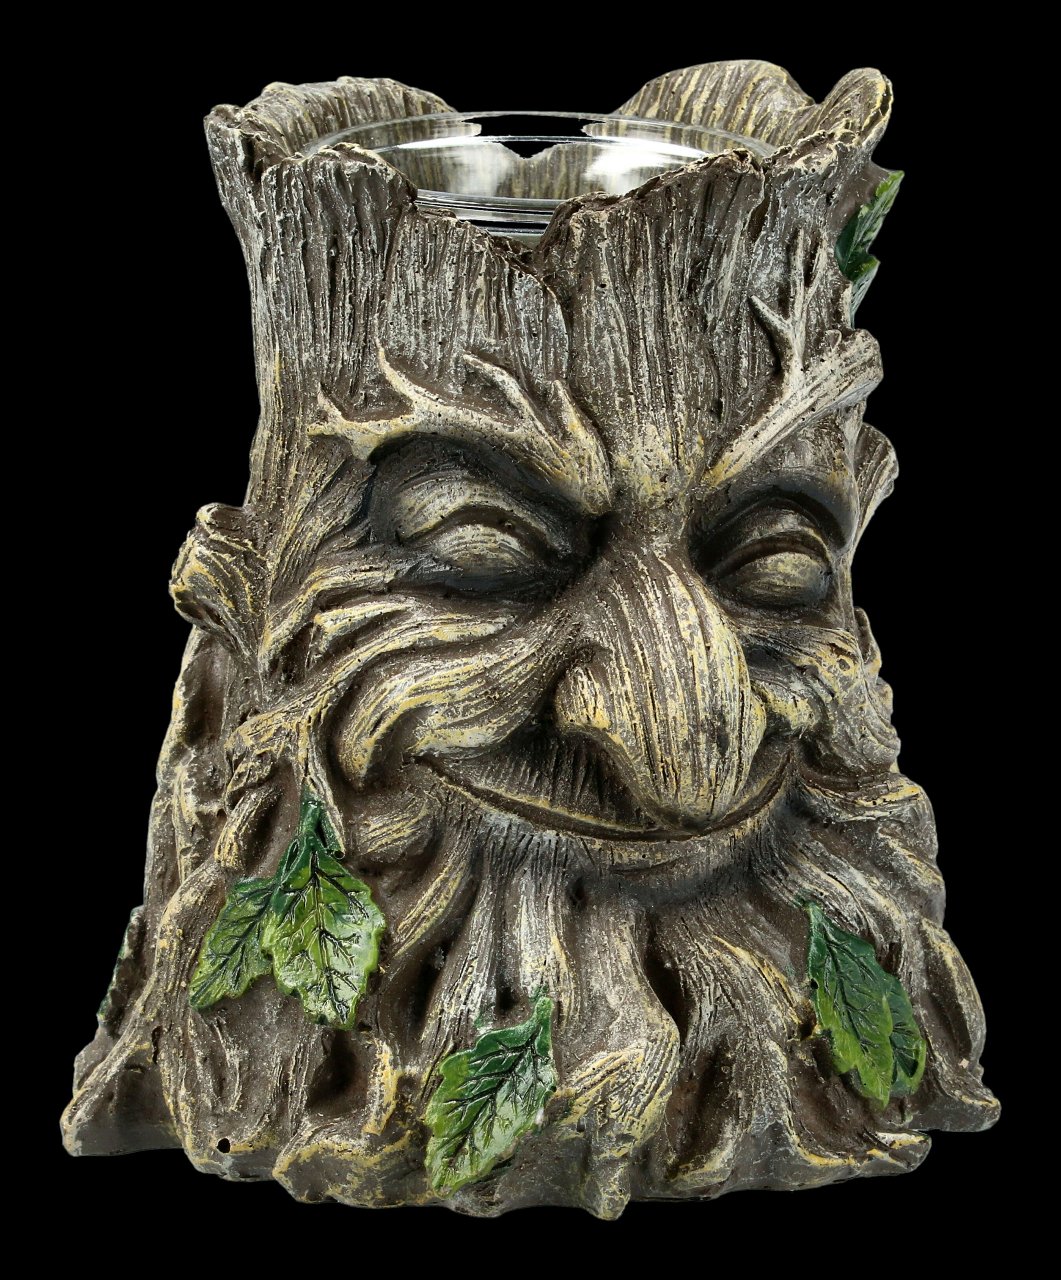 Teelight Holder - Greenman Tree